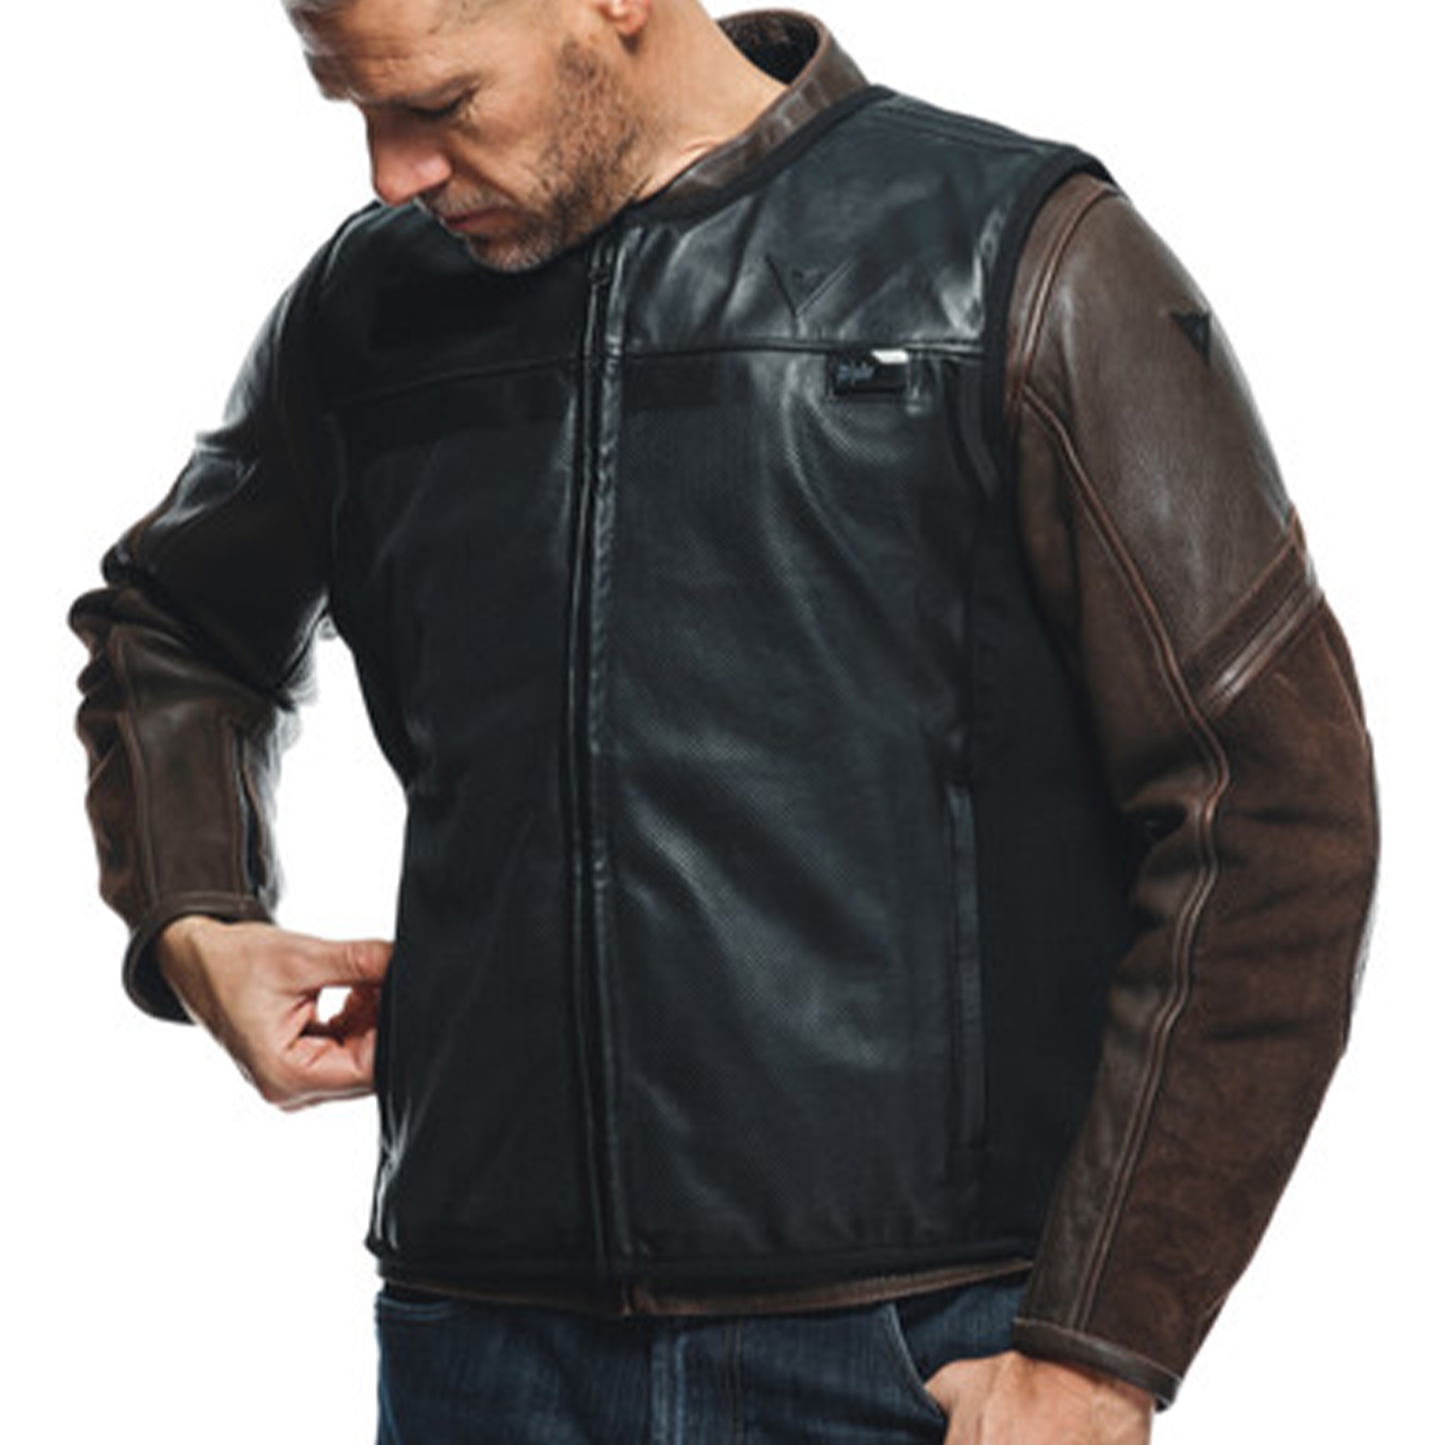 Dainese Smart Jacket Leather - Black (001)